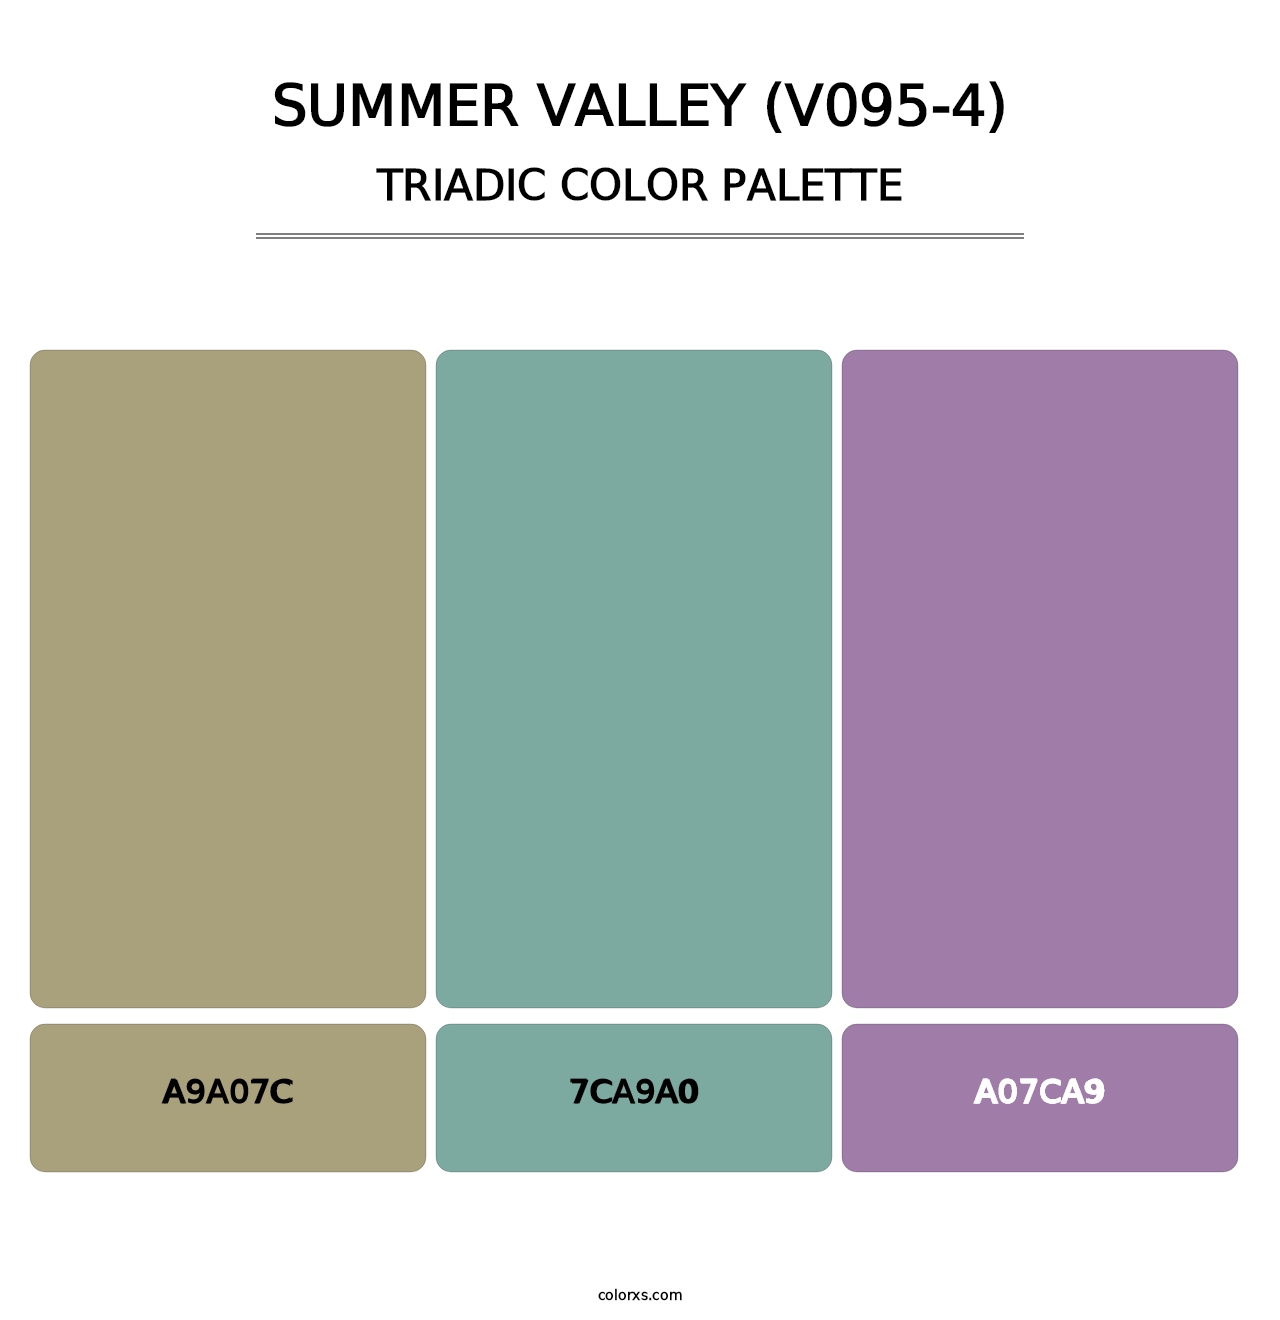 Summer Valley (V095-4) - Triadic Color Palette